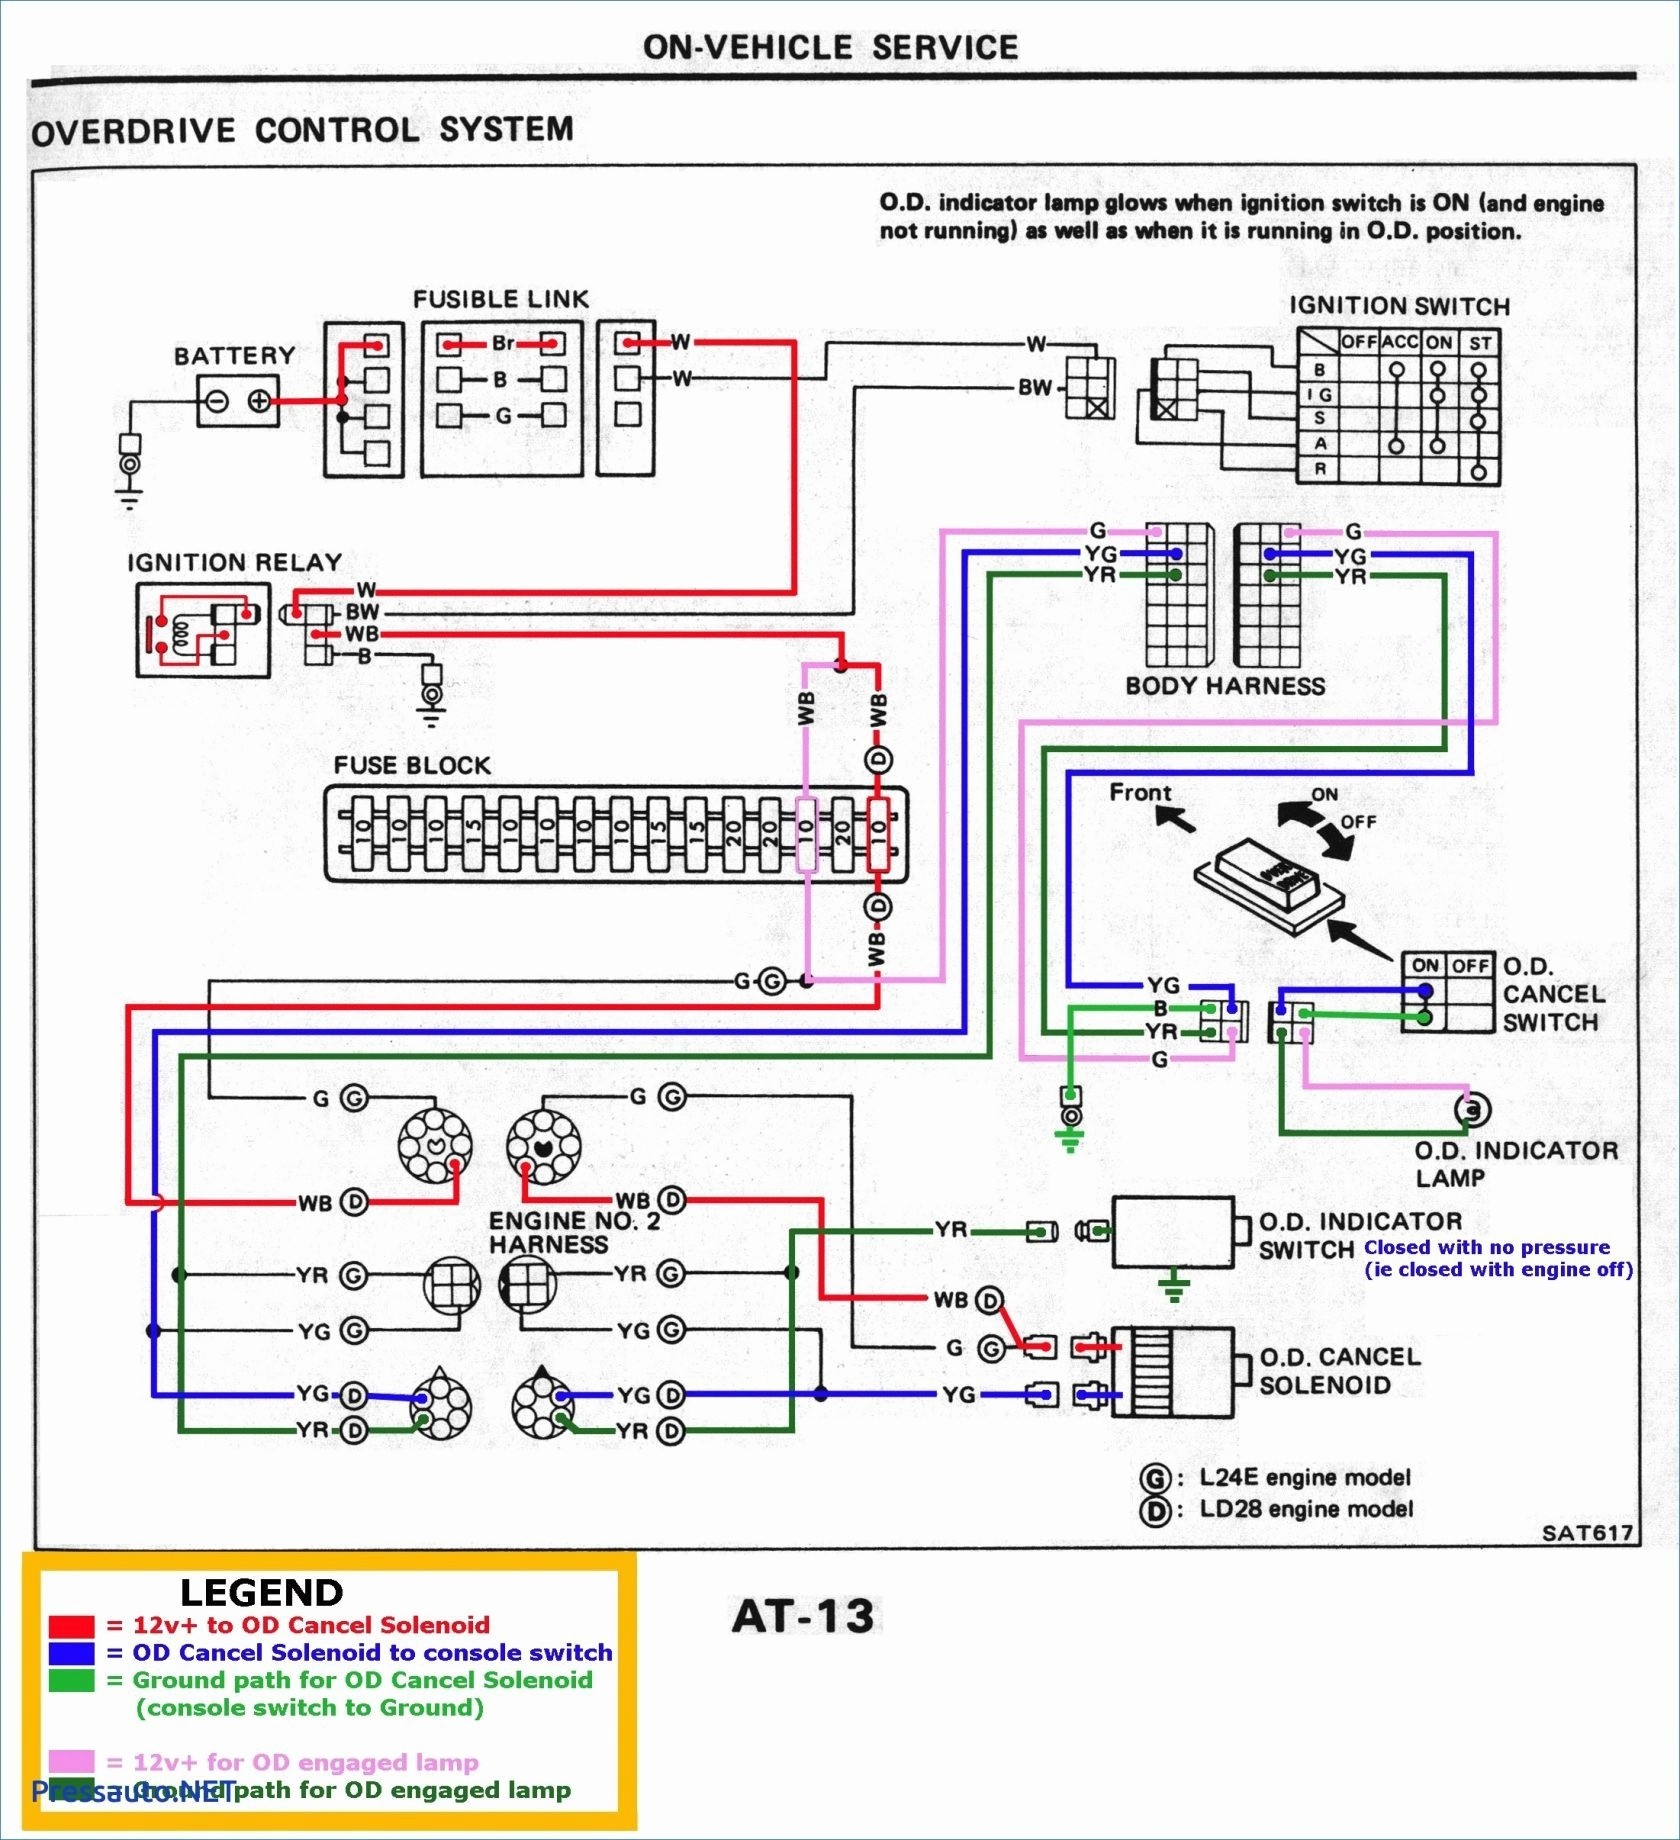 taskmaster wiring diagrams wiring diagram data